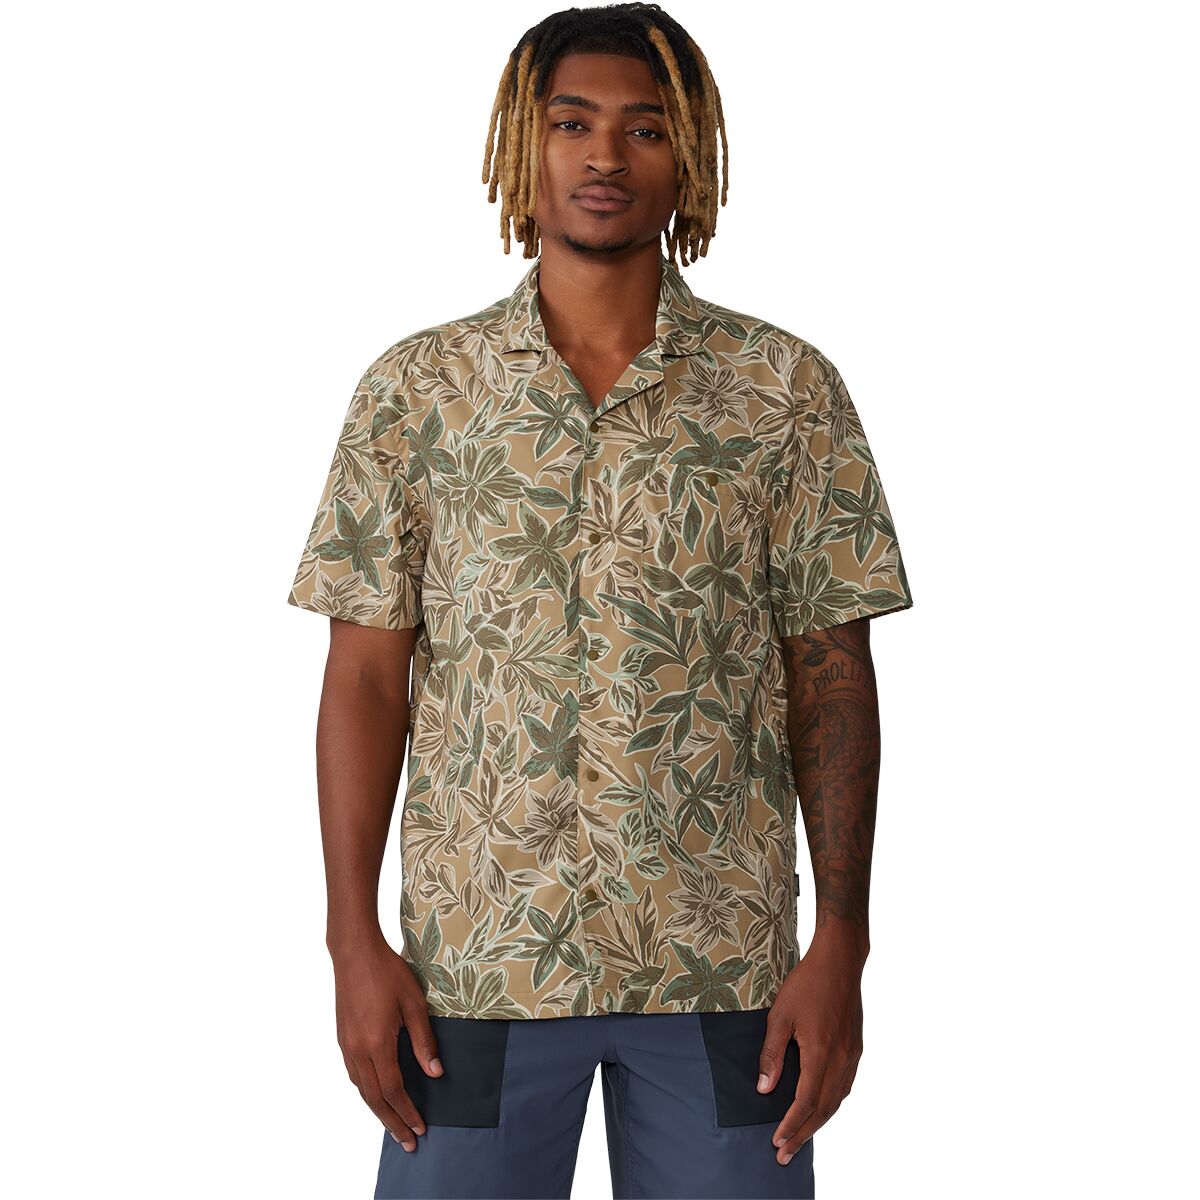 Лагерная рубашка trail sender Mountain Hardwear, цвет sandstorm floral print